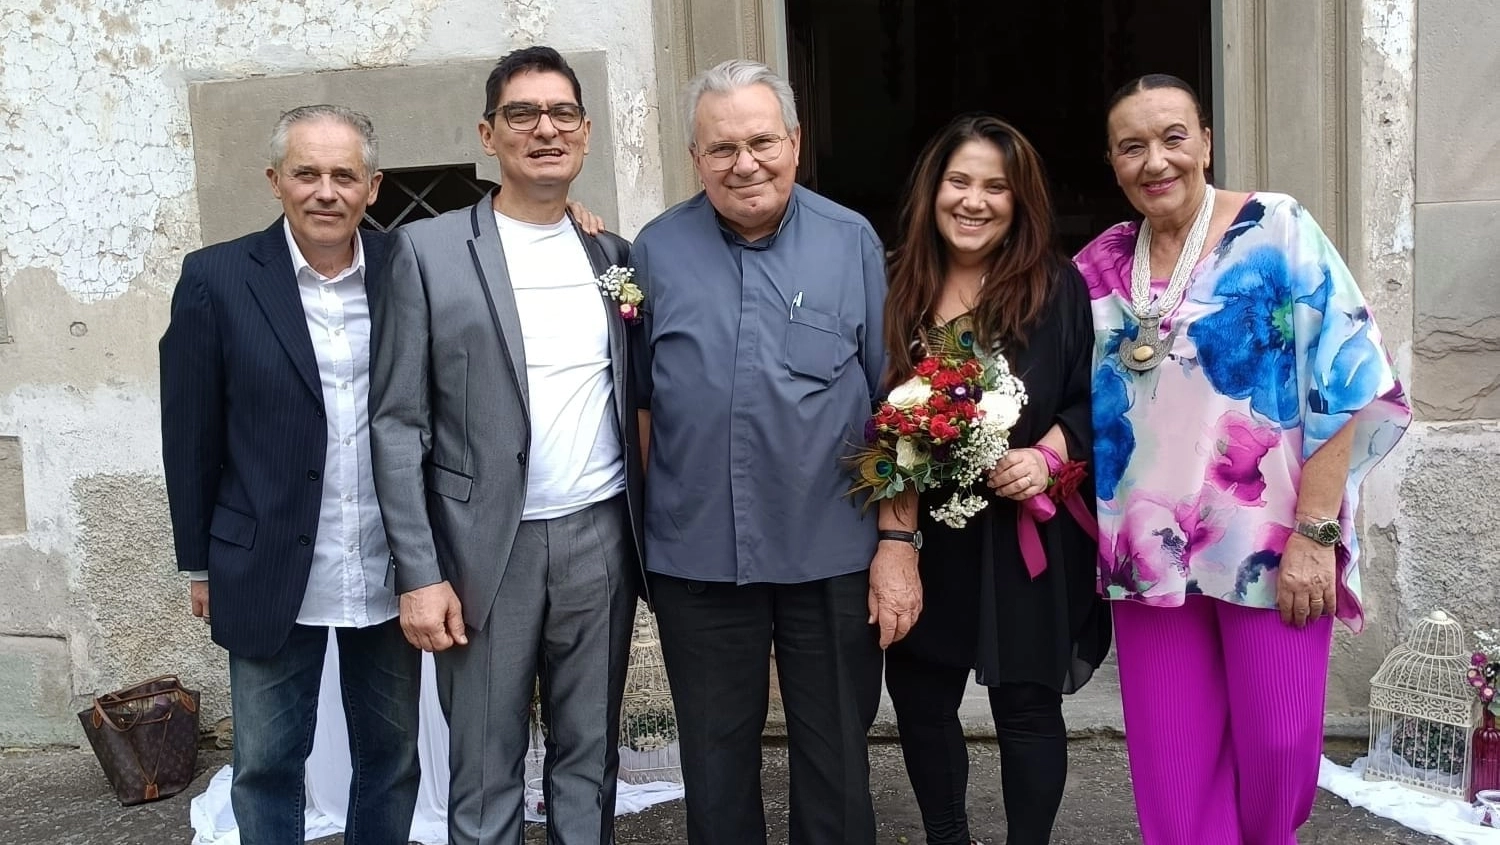 La coppia si è sposata in chiesa a Cavola di Toano, nell’Appennino reggiano, alla presenza di alcuni amici stretti e don Gigi Milani che ha celebrato il rito